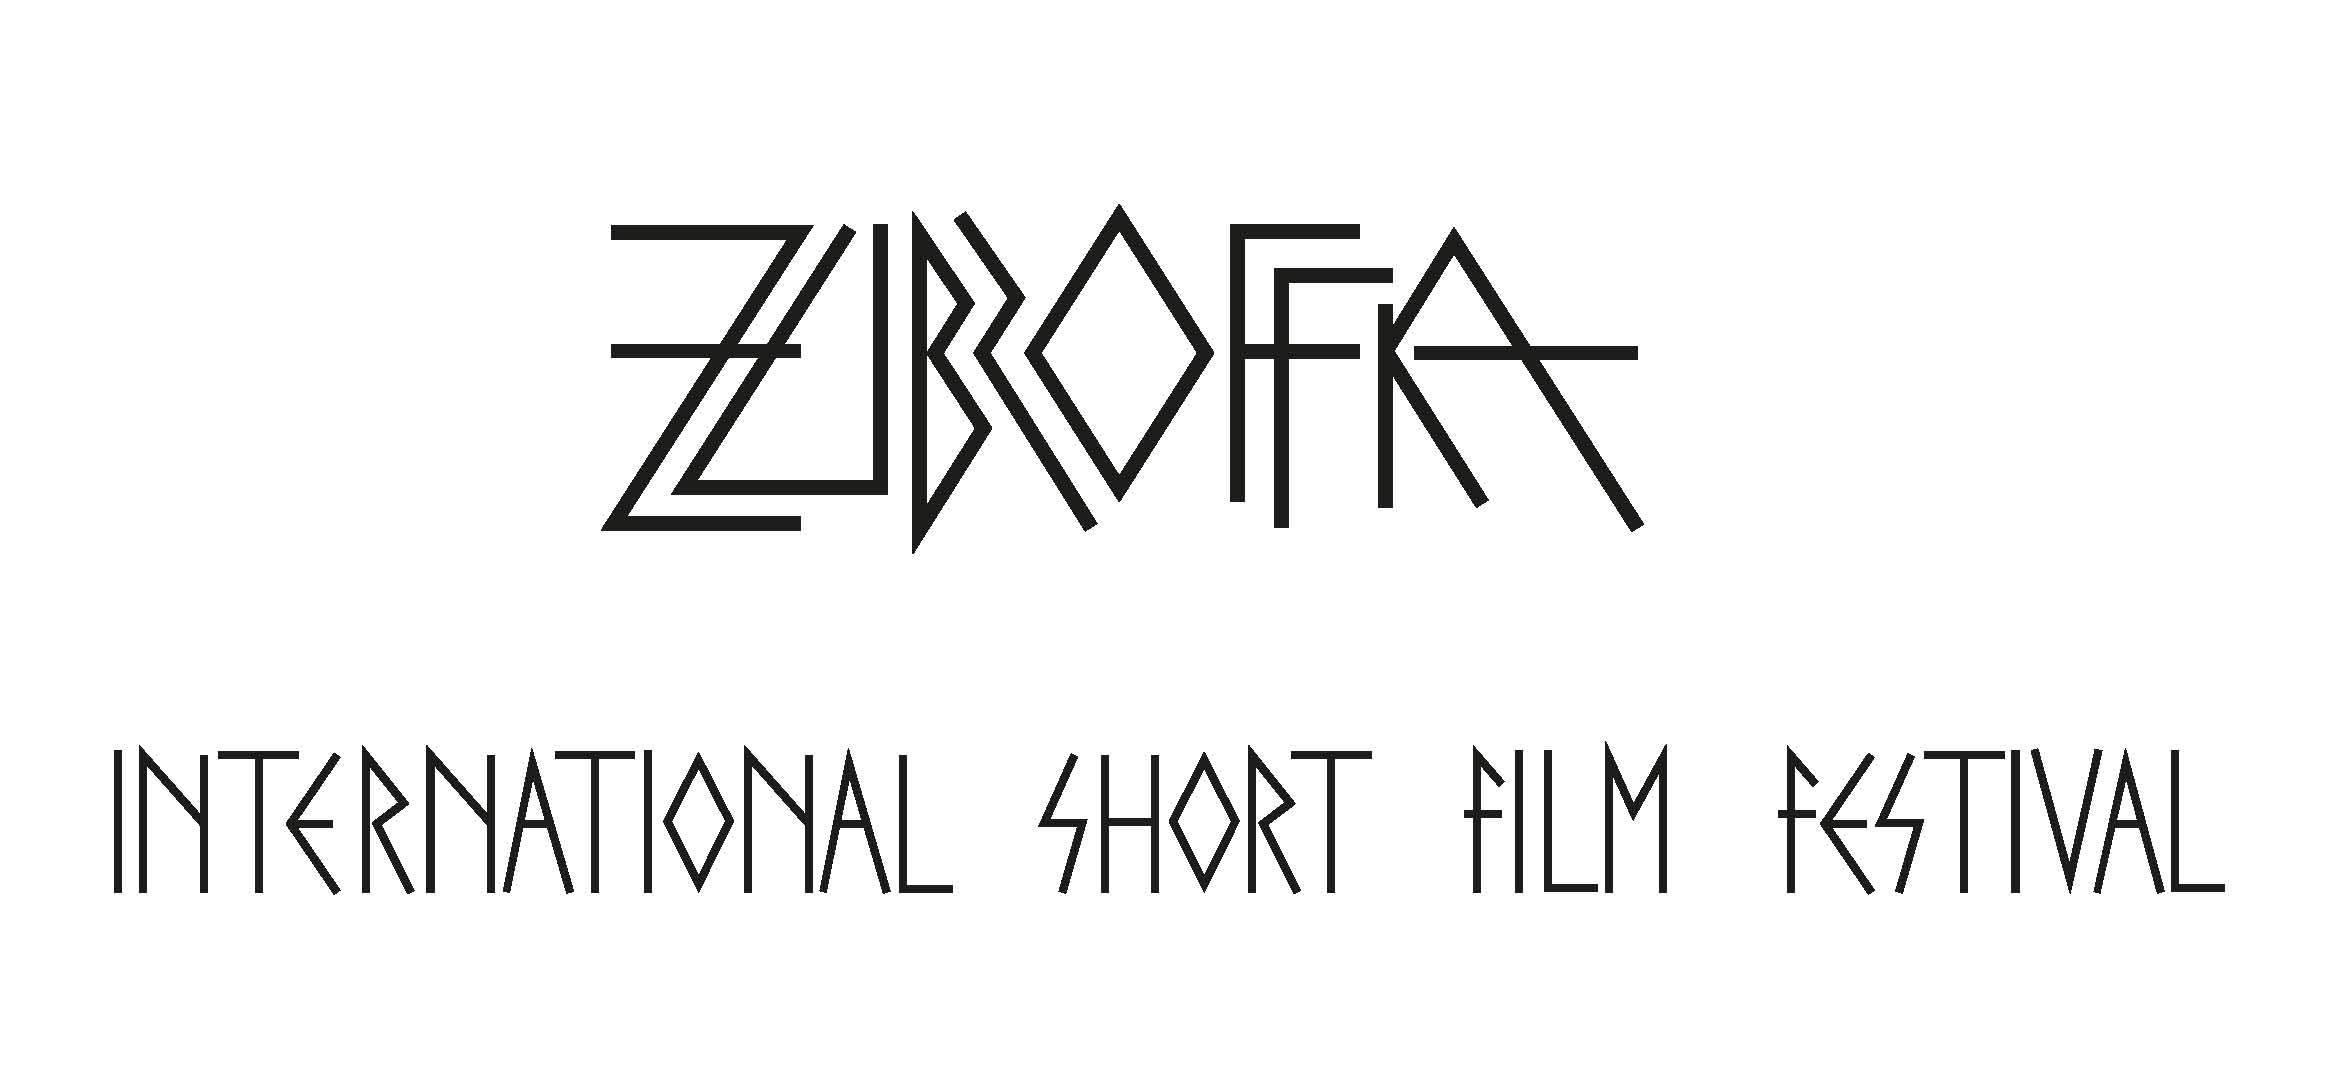 Zubroffka_nowa_typografia